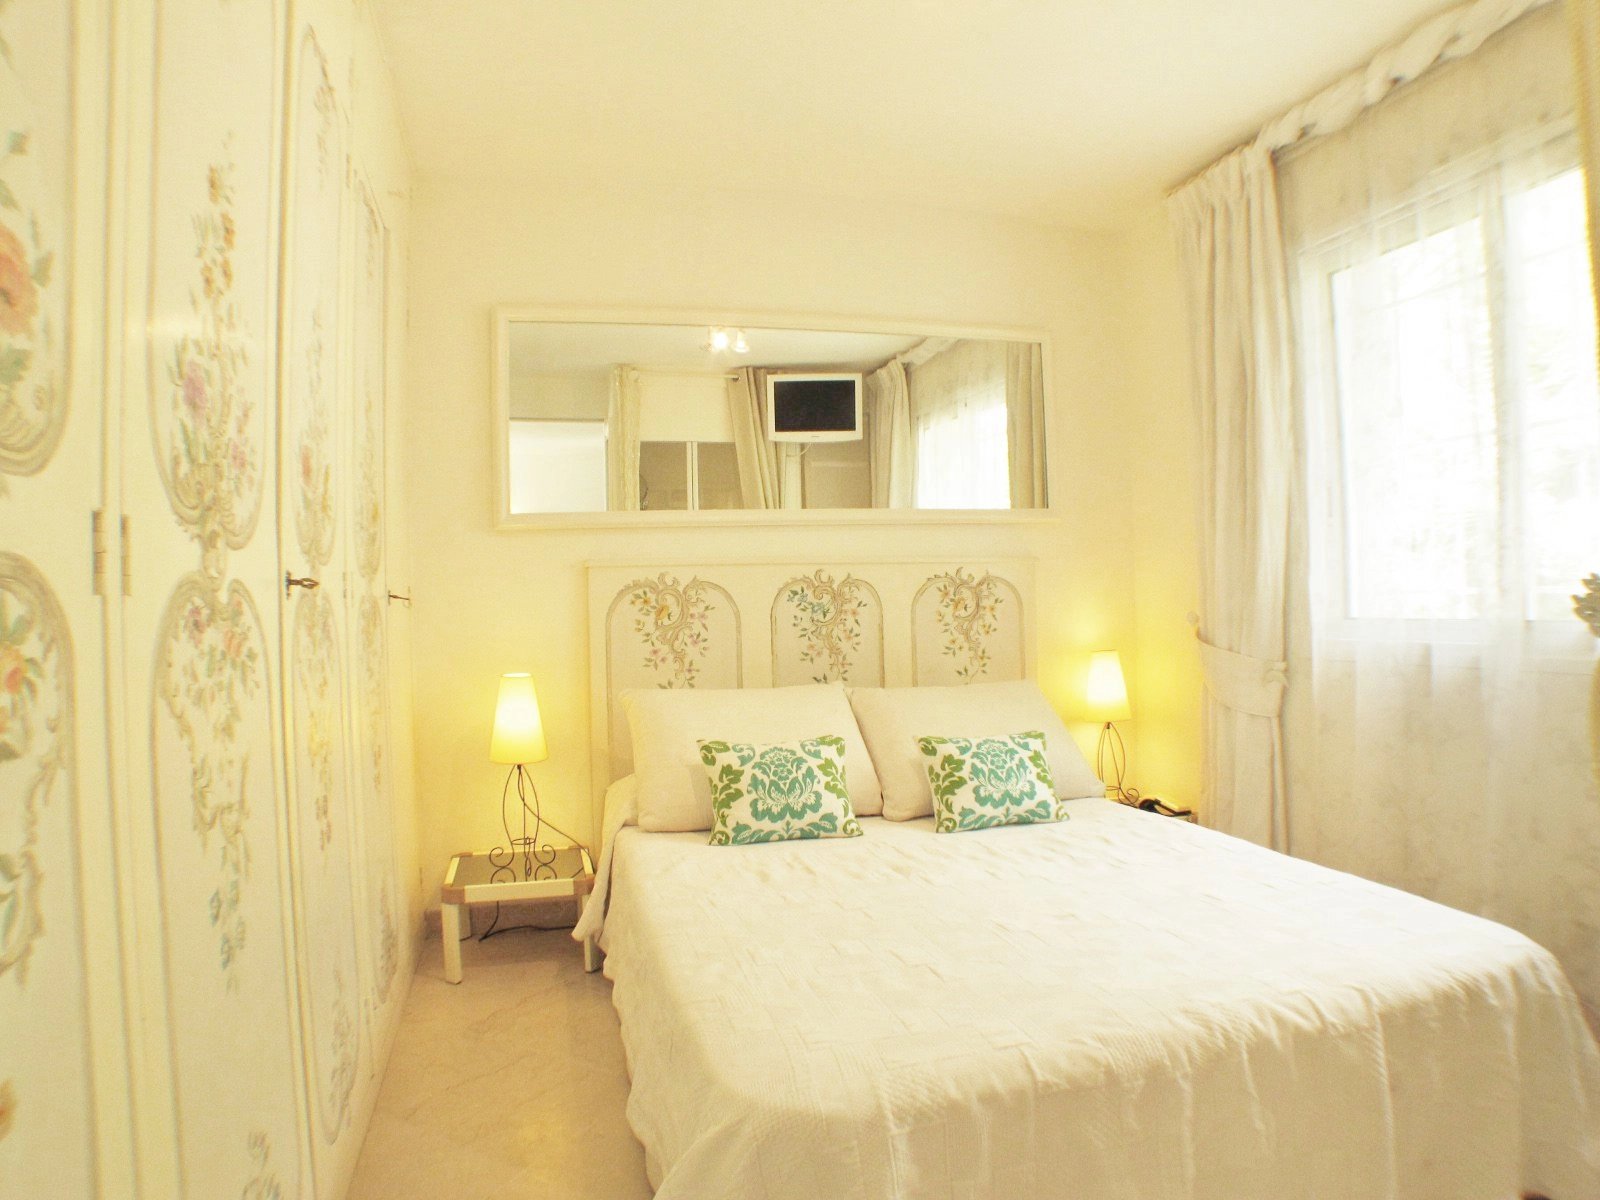 Bedroom, natural light, carpet